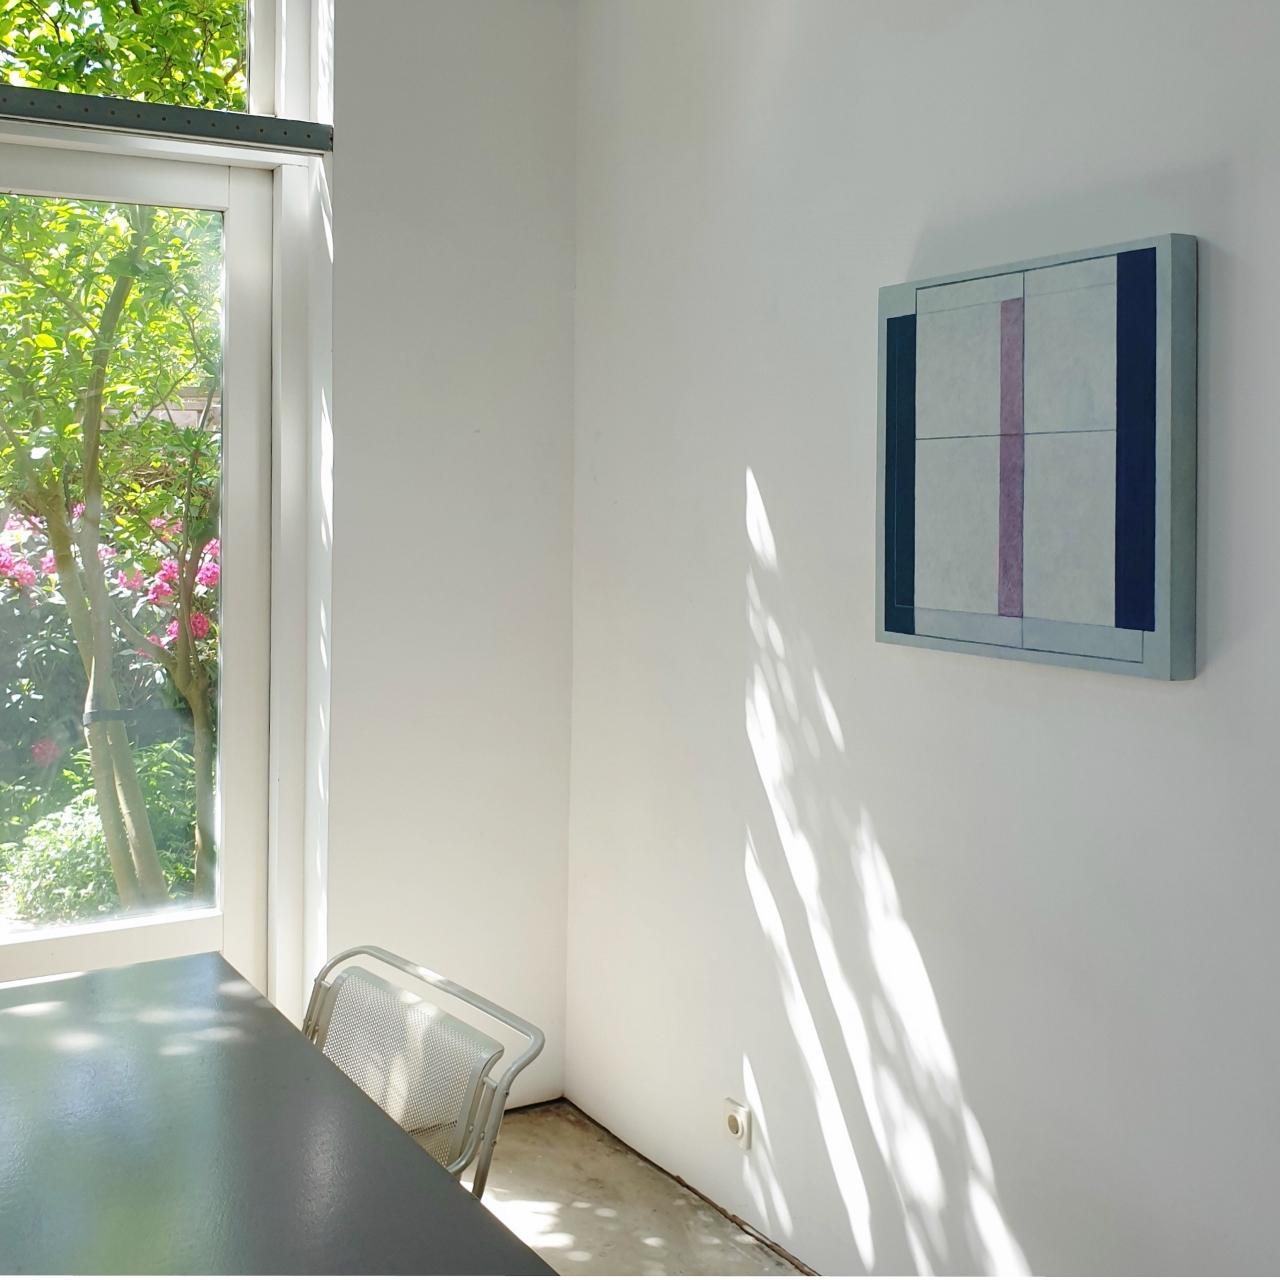 Fentre transparente – zeitgenössische moderne geometrische Skulptur-Malereiplatte – Painting von Olivier Julia